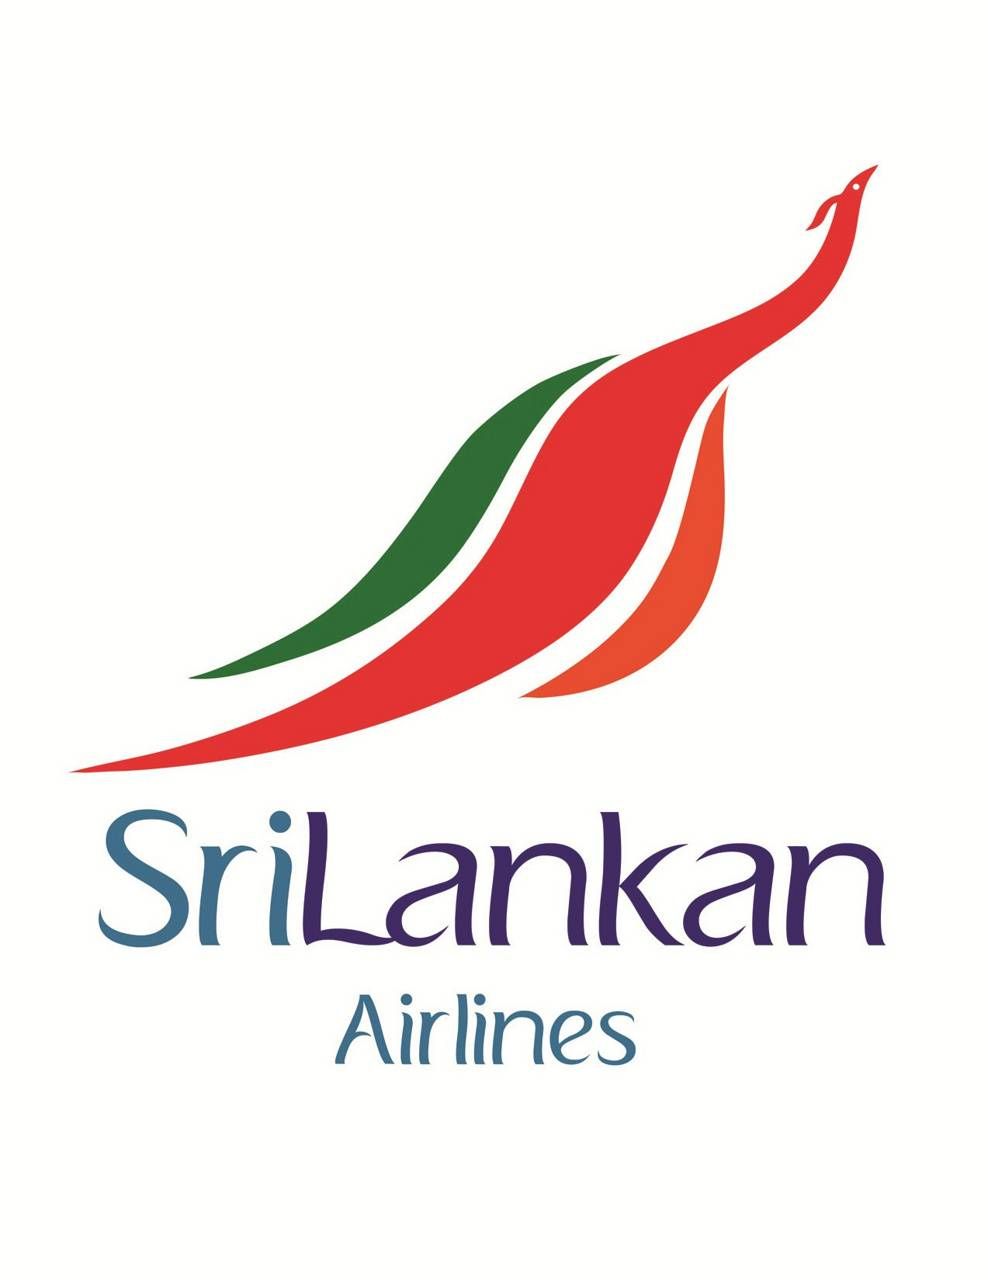 srilankan airlines wallpaper